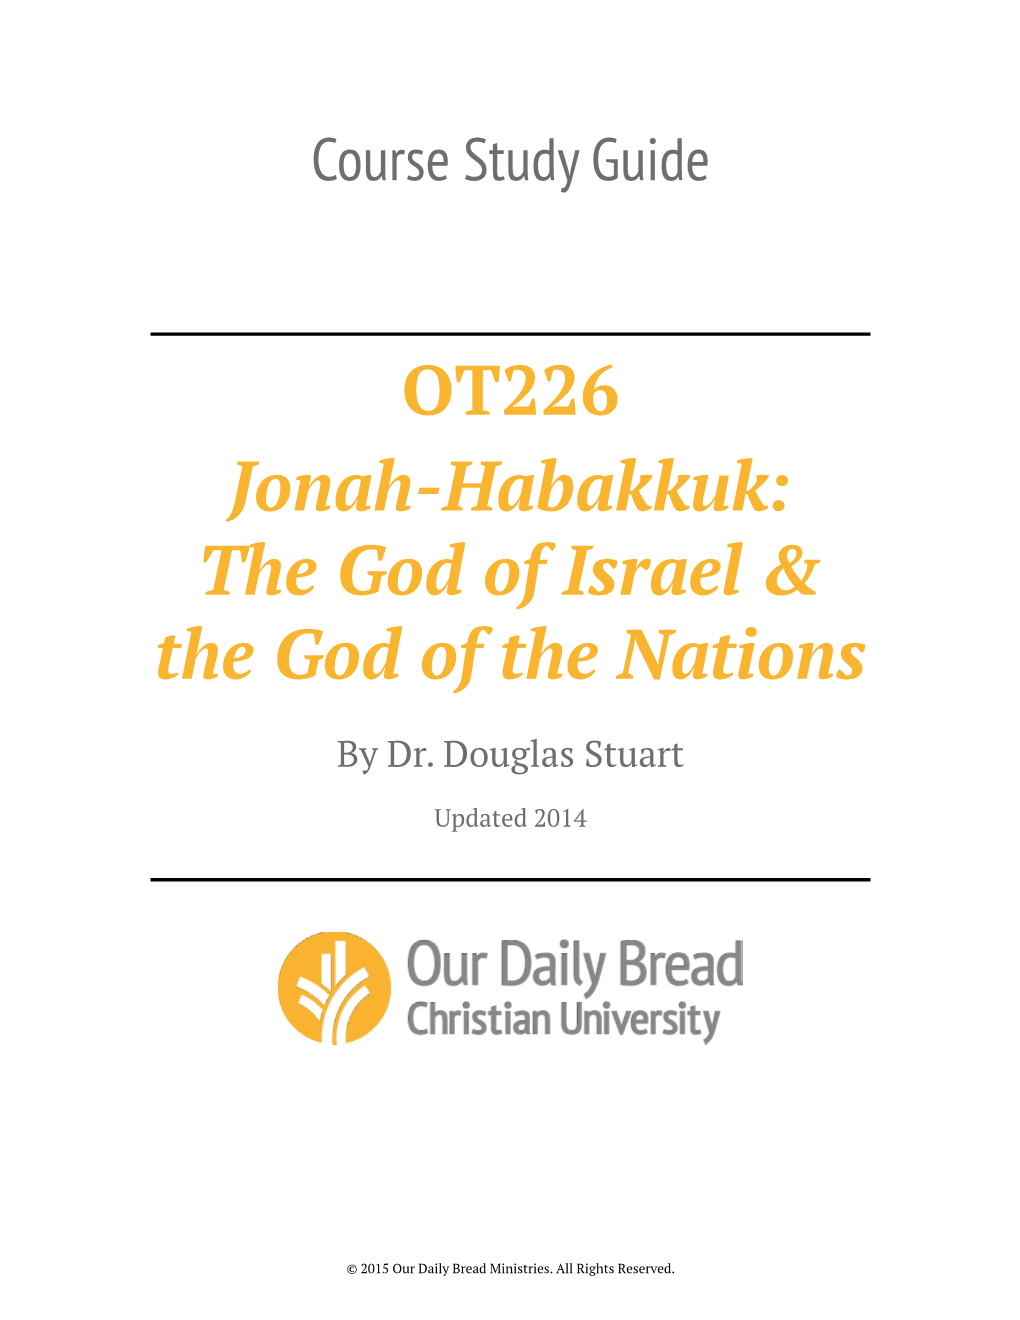 OT226 Jonah-Habakkuk: the God of Israel & the God of the Nations